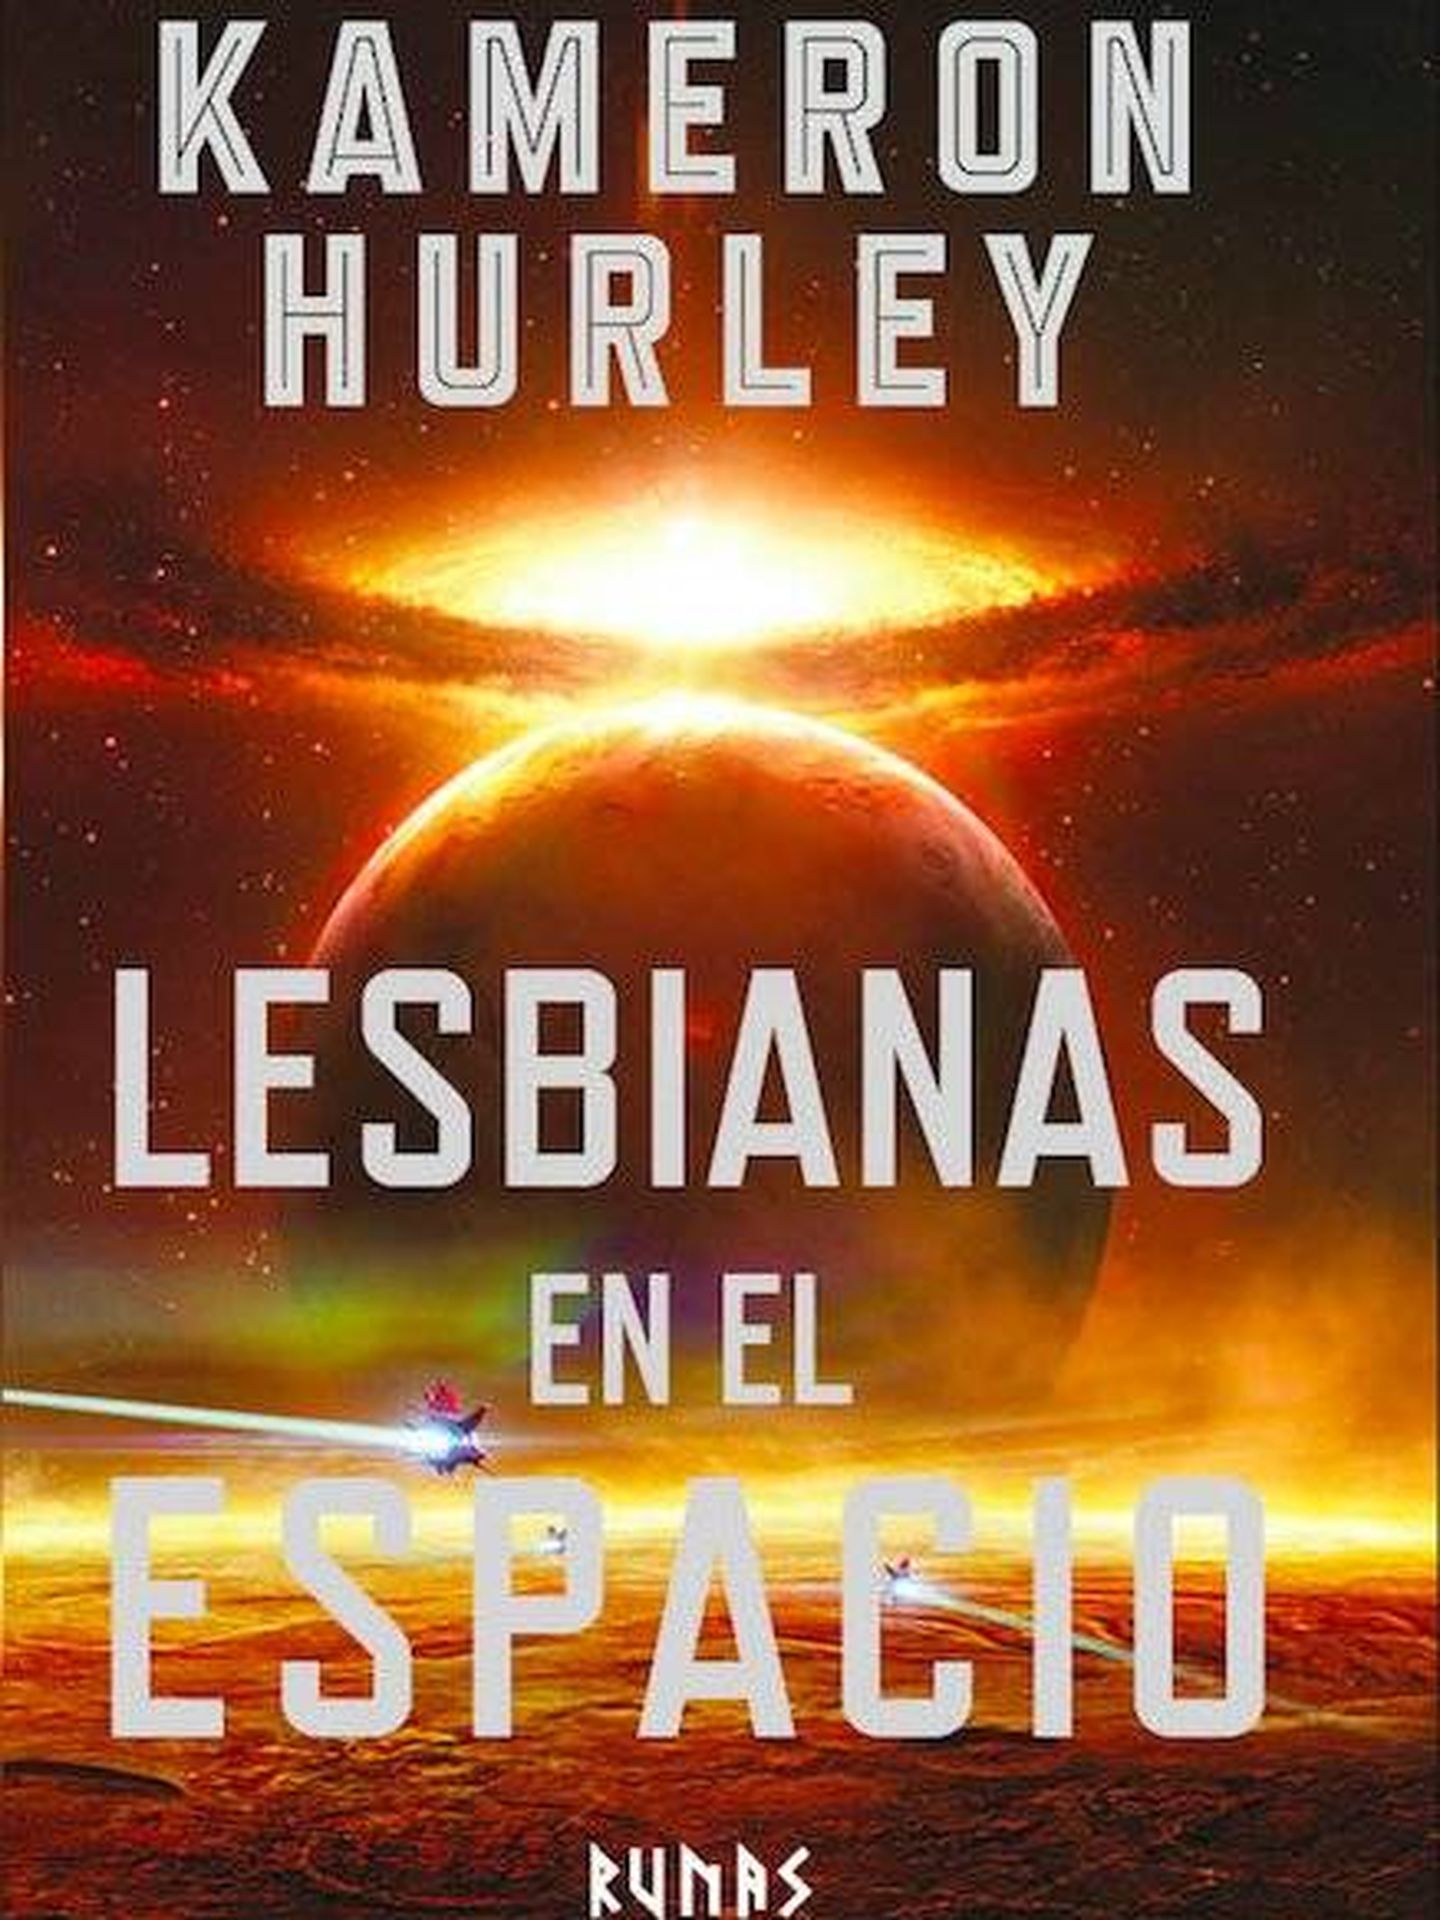 'Lesbianas en el espacio', la reedición de 'Las estrellas son legión', como respuesta a una crítica del libro de Hurley por incluir personajes no heterosexuales.